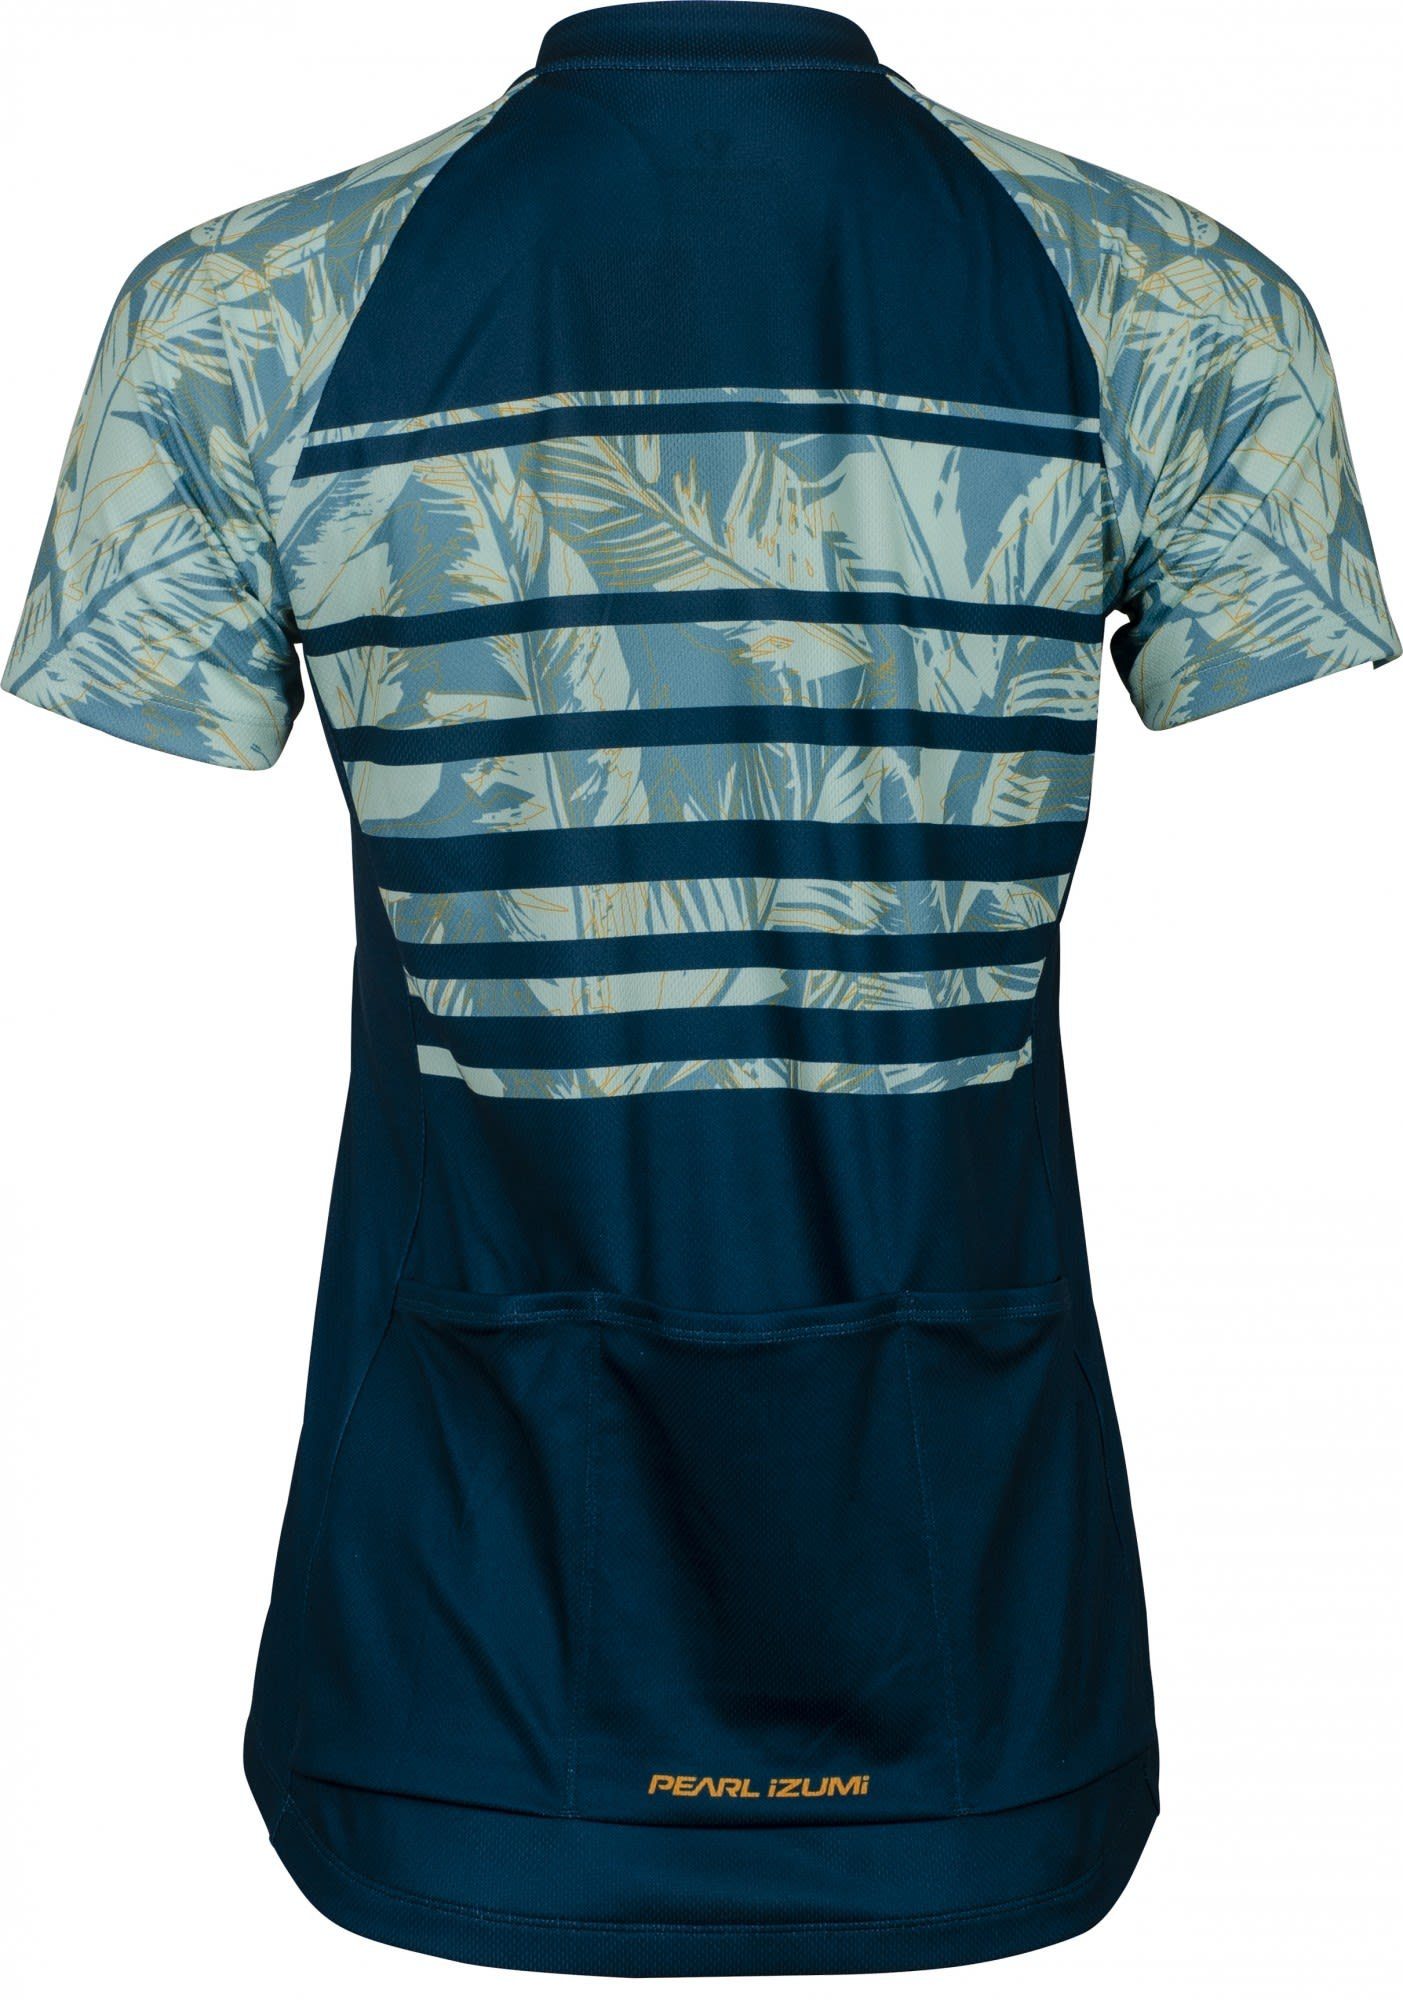 Pearl Feather Bl Damen - Izumi - W Pearl Palm Kurzarm-Shirt Jersey Striped Bl Gr Izumi T-Shirt Classic